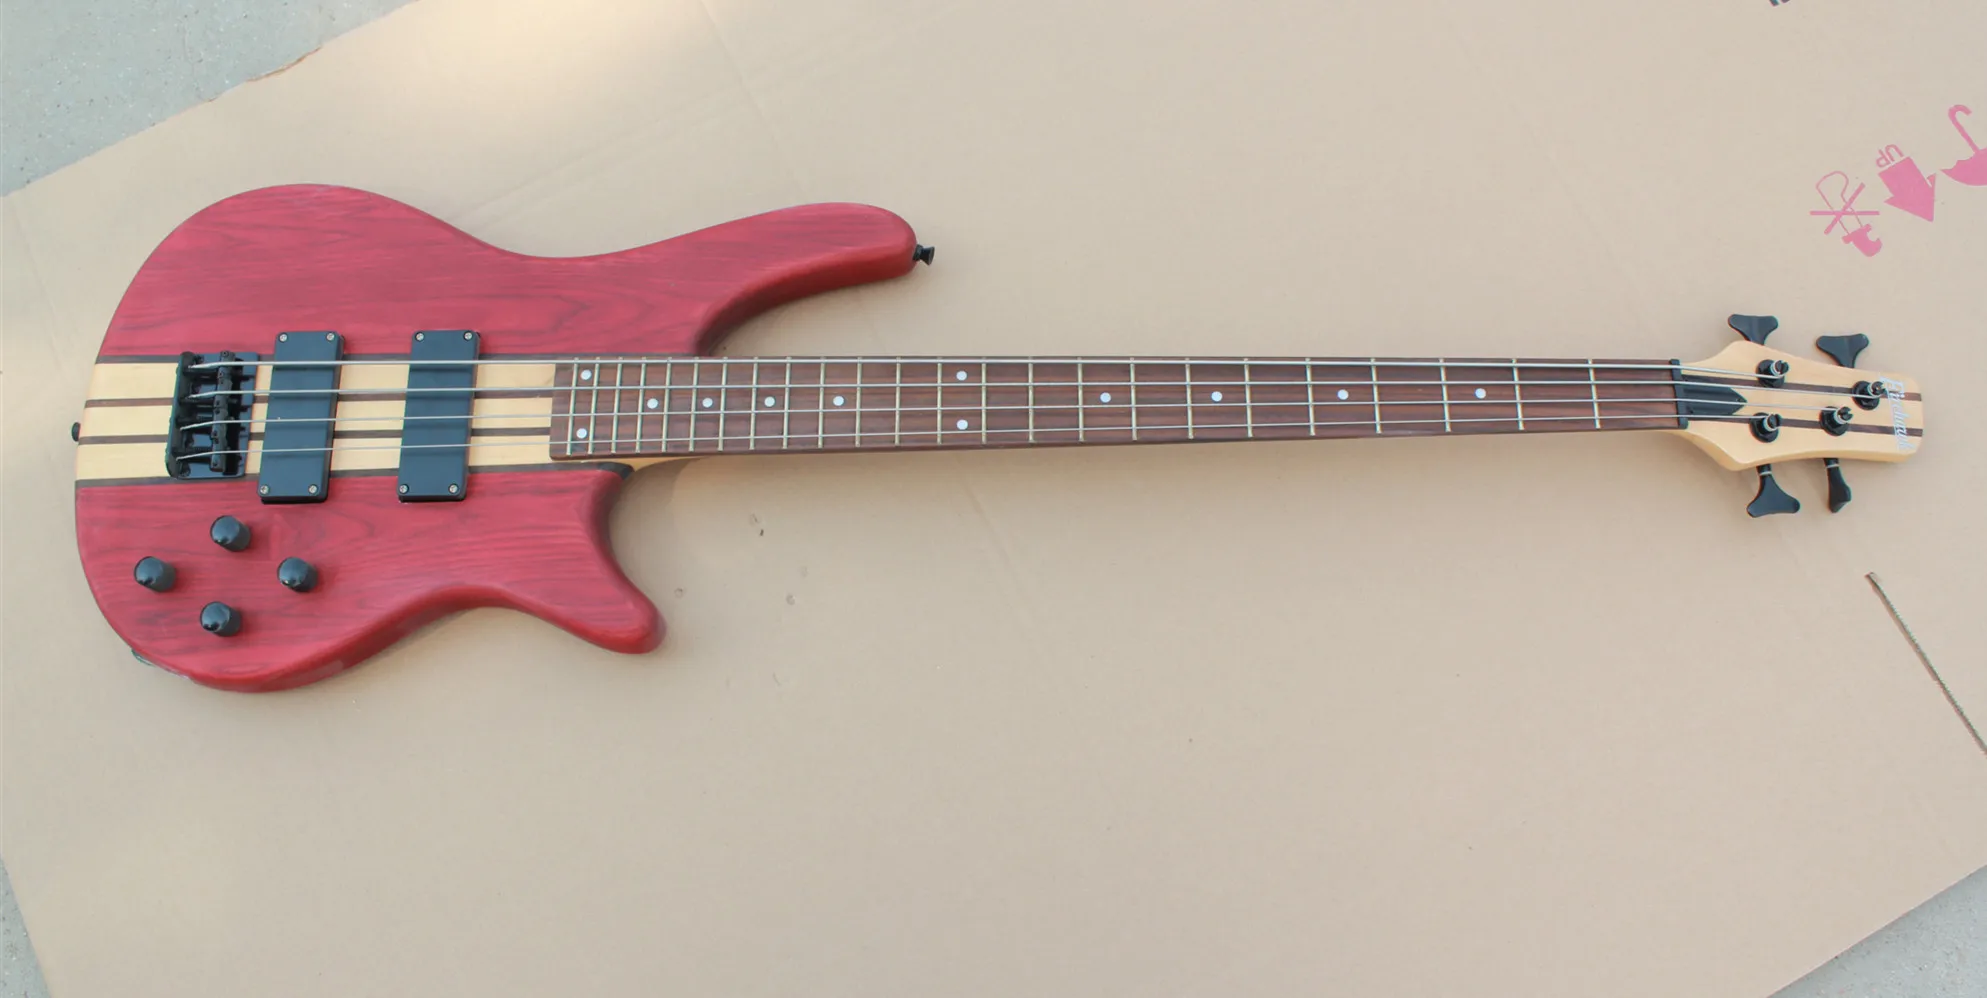 Электрическая гитара бас 4 струны матовый красный цвет HH звукосниматели палисандр гриф paypal доступны! Bs-29